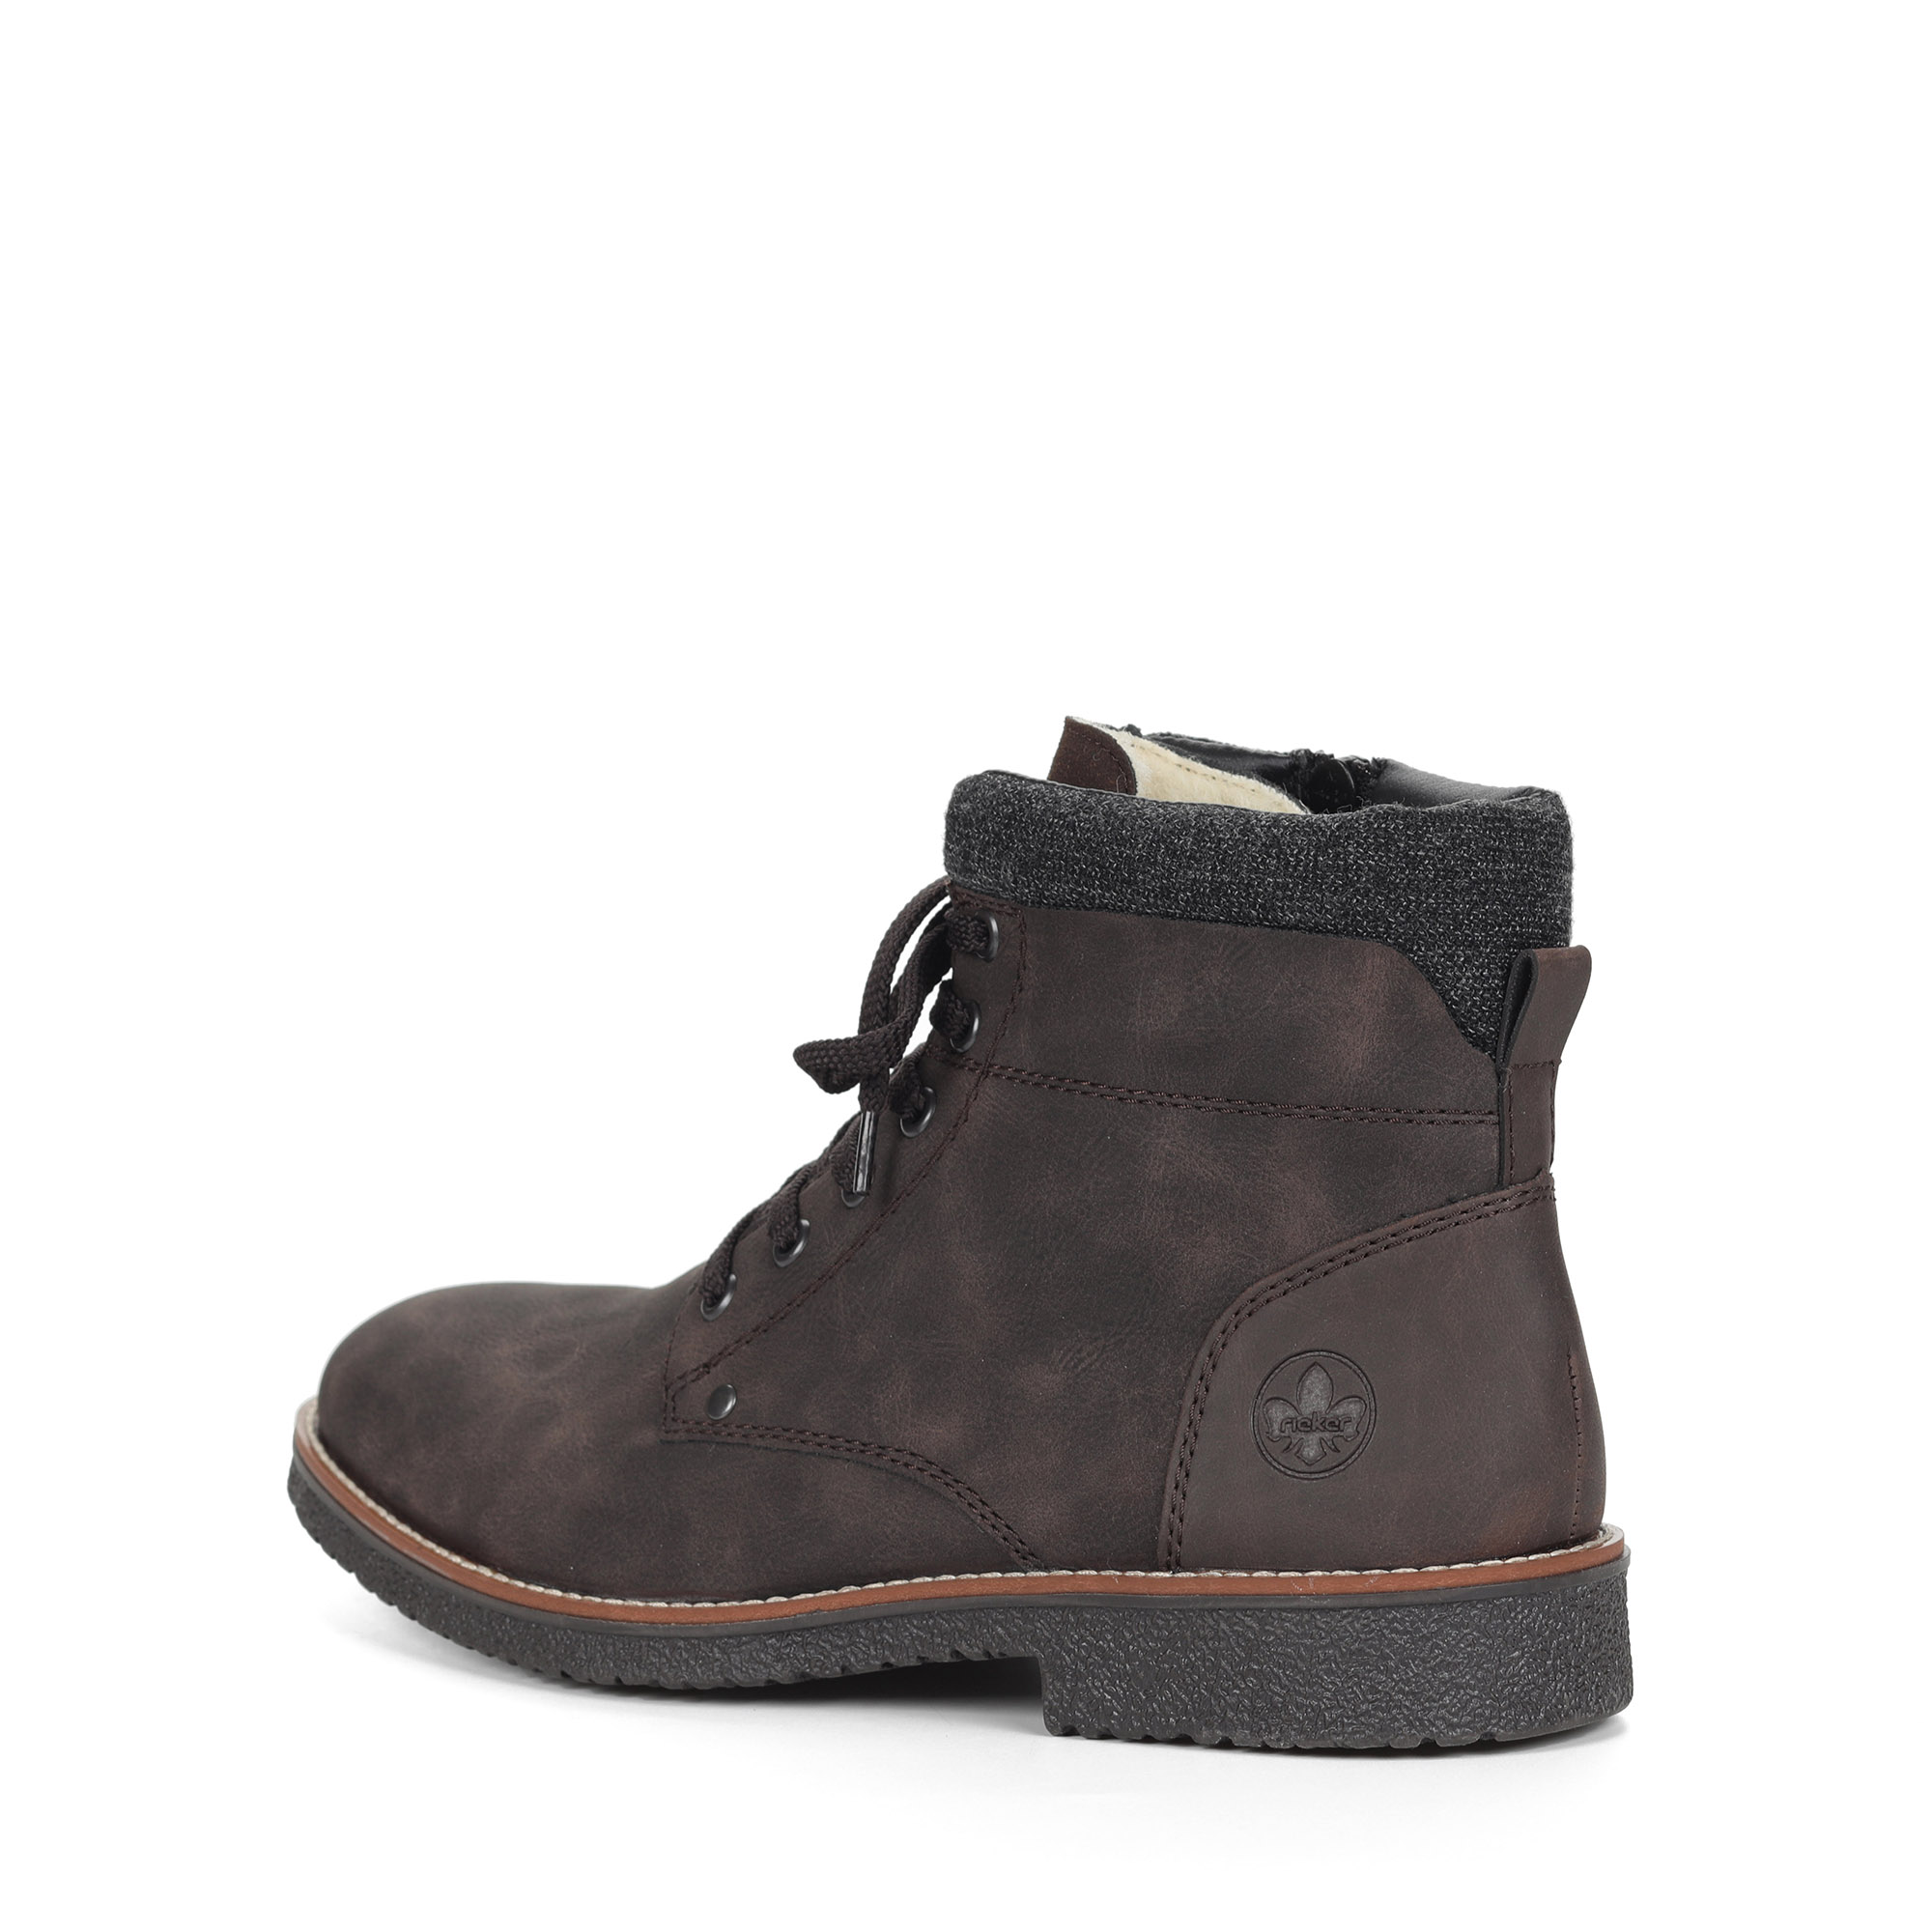 Коричневые ботинки из экокожи на подкладке из натуральной шерсти на шнурках Rieker, размер 42, цвет коричневый - фото 4